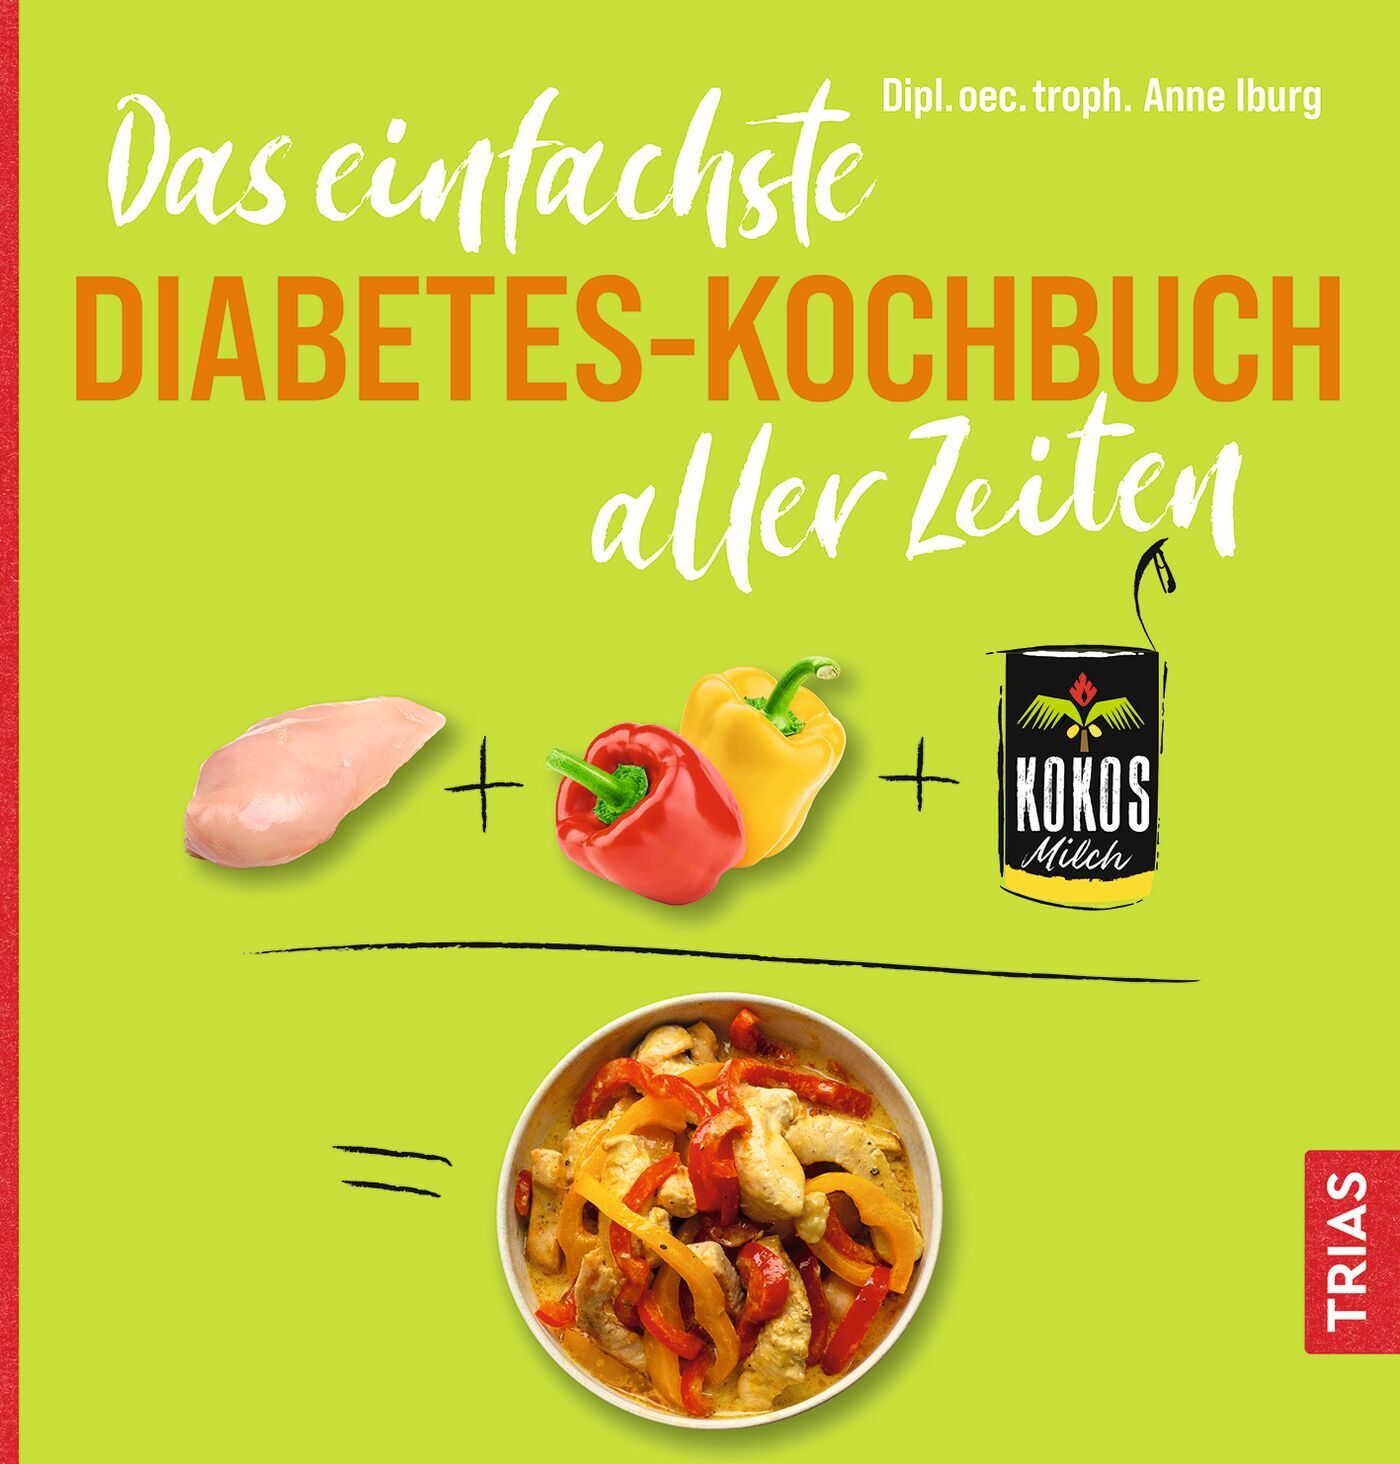 Das einfachste Diabetes-Kochbuch aller Zeiten, 9783432118185